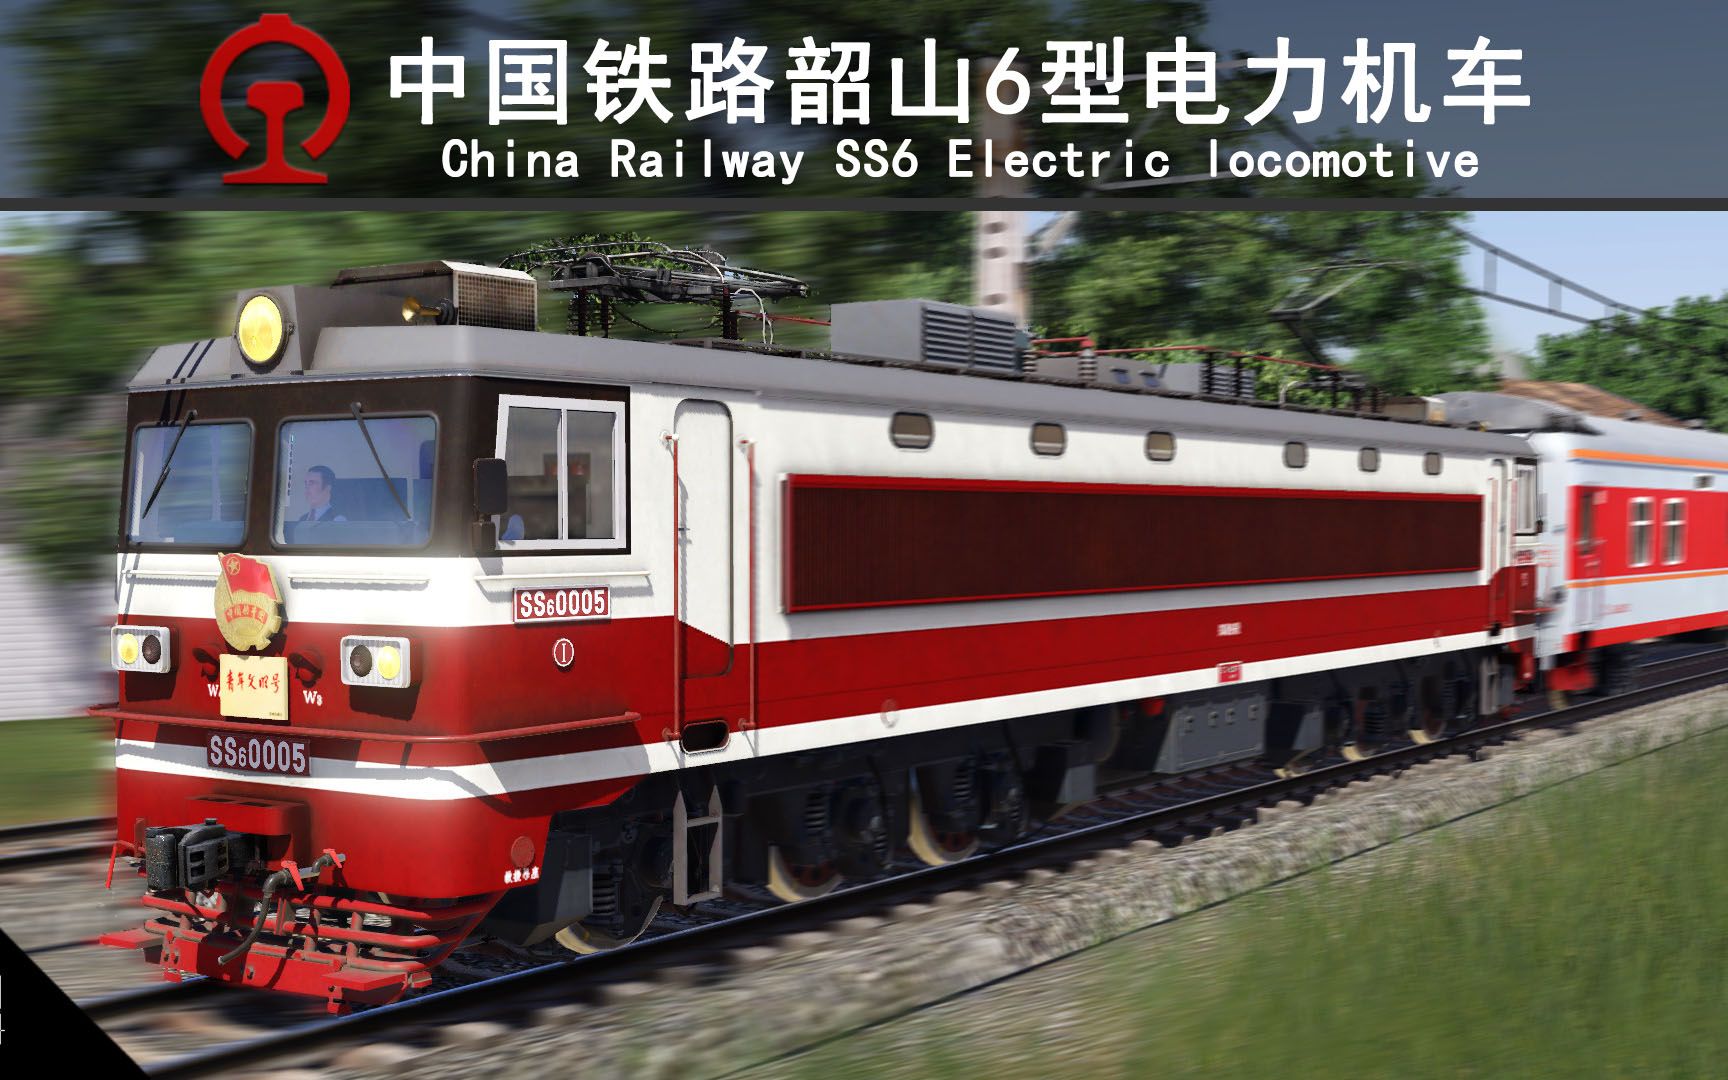 【狂热运输2】中国铁路韶山6型电力机车现已发布